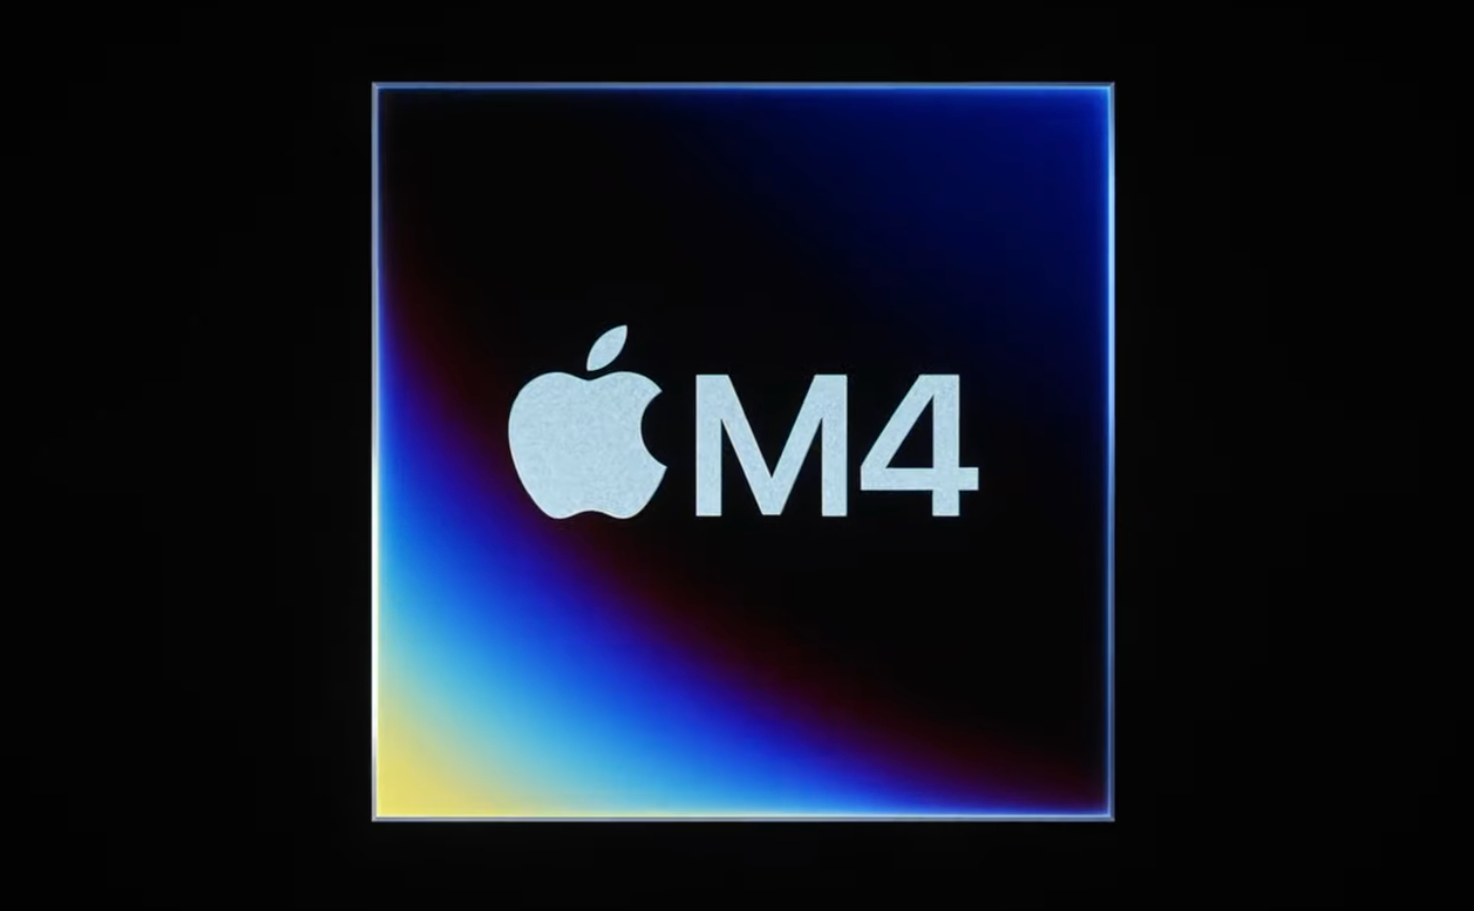 Apple เปิดตัวชิป M4 ชิป M4 ครั้งแรกใน iPad Pro